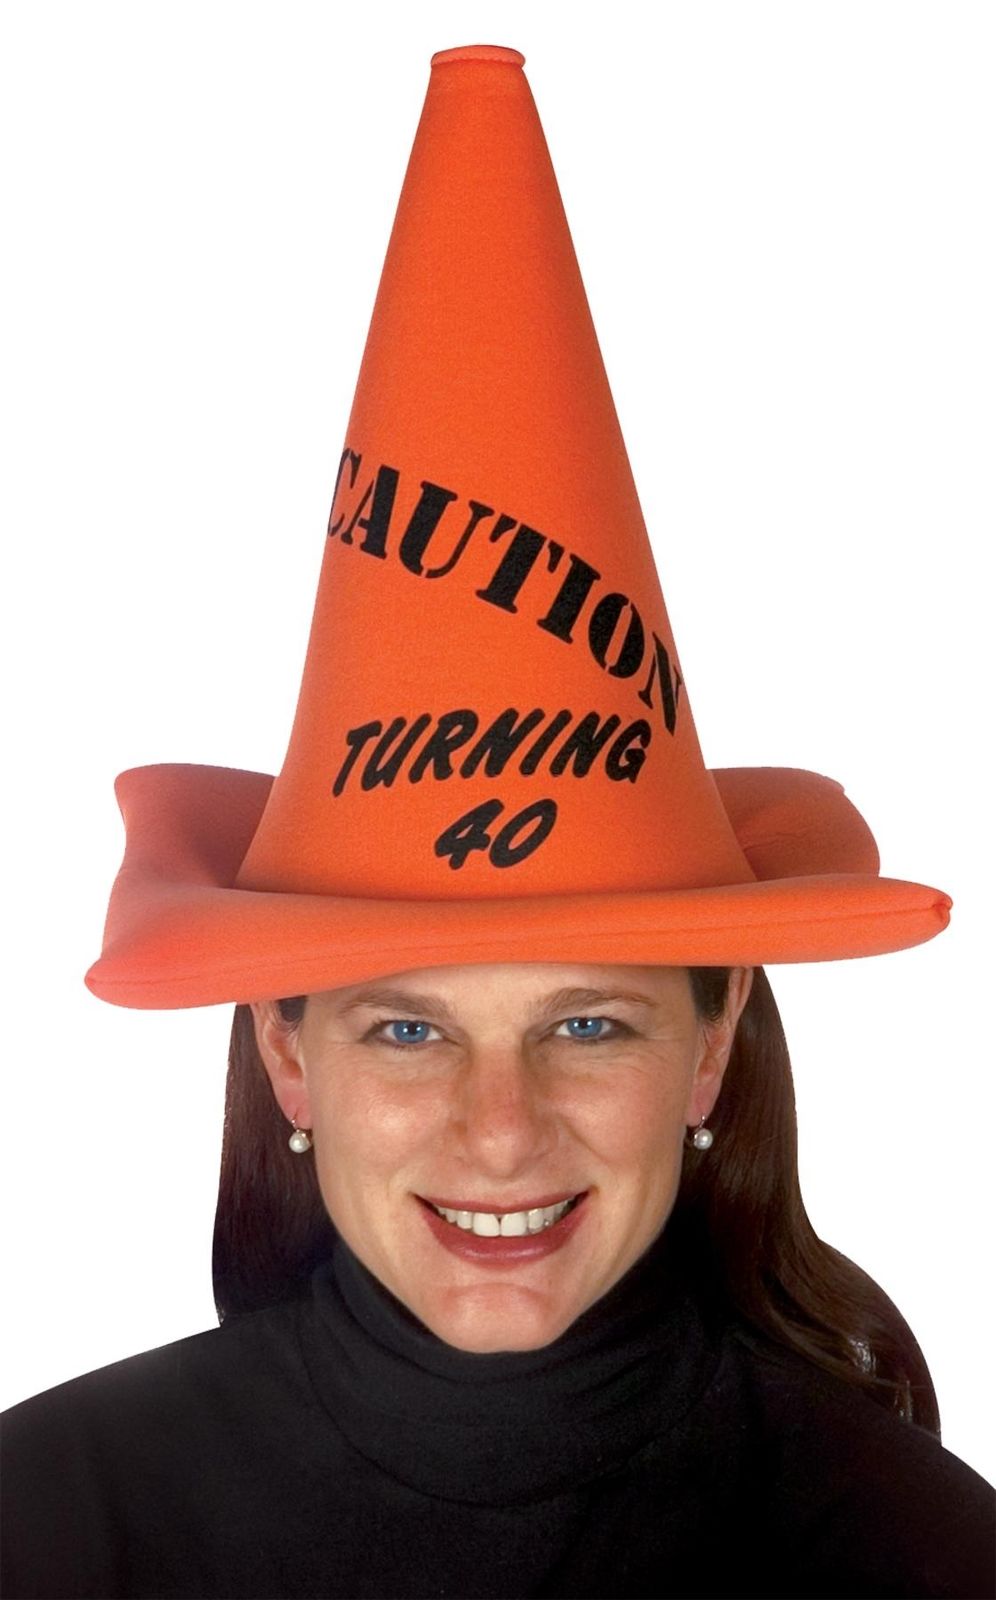 Orange Safety Cone - Caution Turning 40 Hat - Bargainwizz